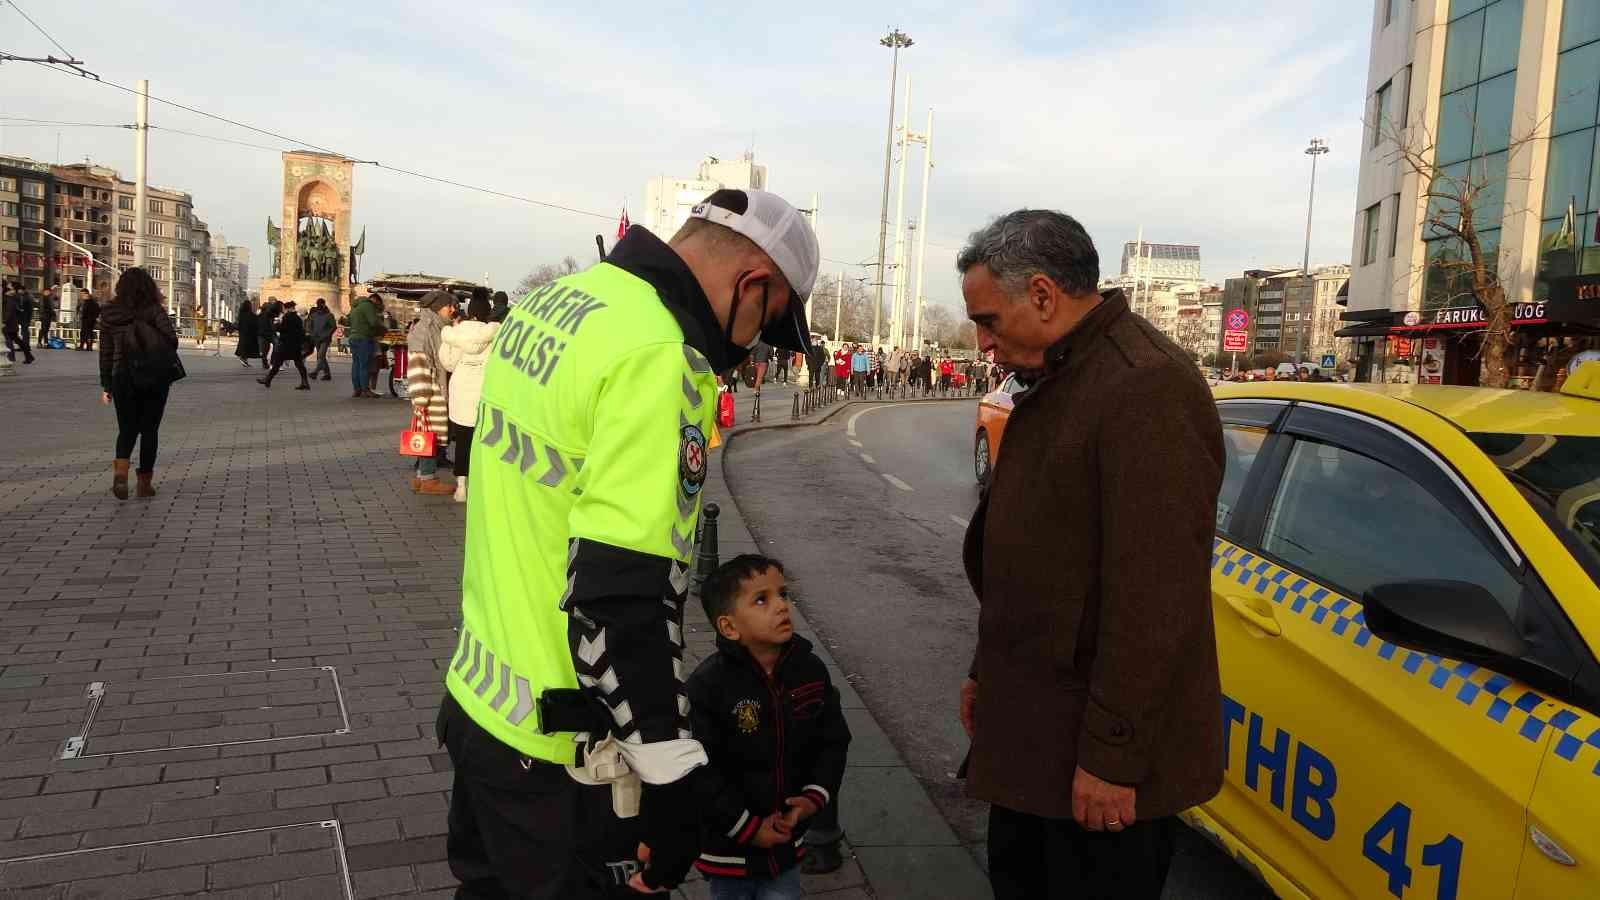 Taksim’de kaybolan çocuğa polis sahip çıktı #istanbul